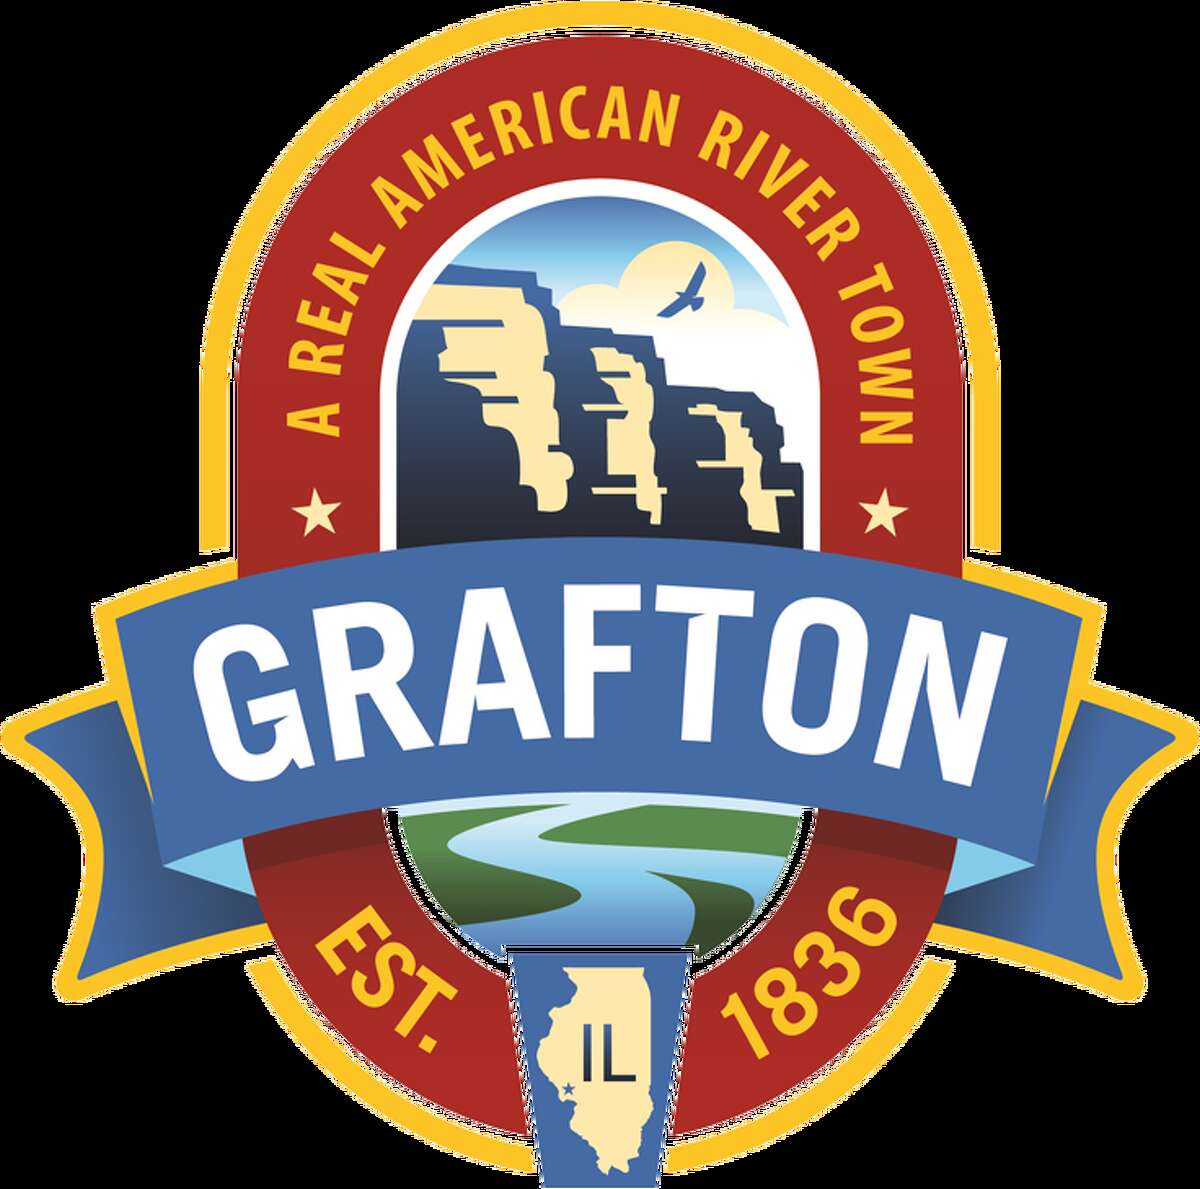 Grafton, Illinois